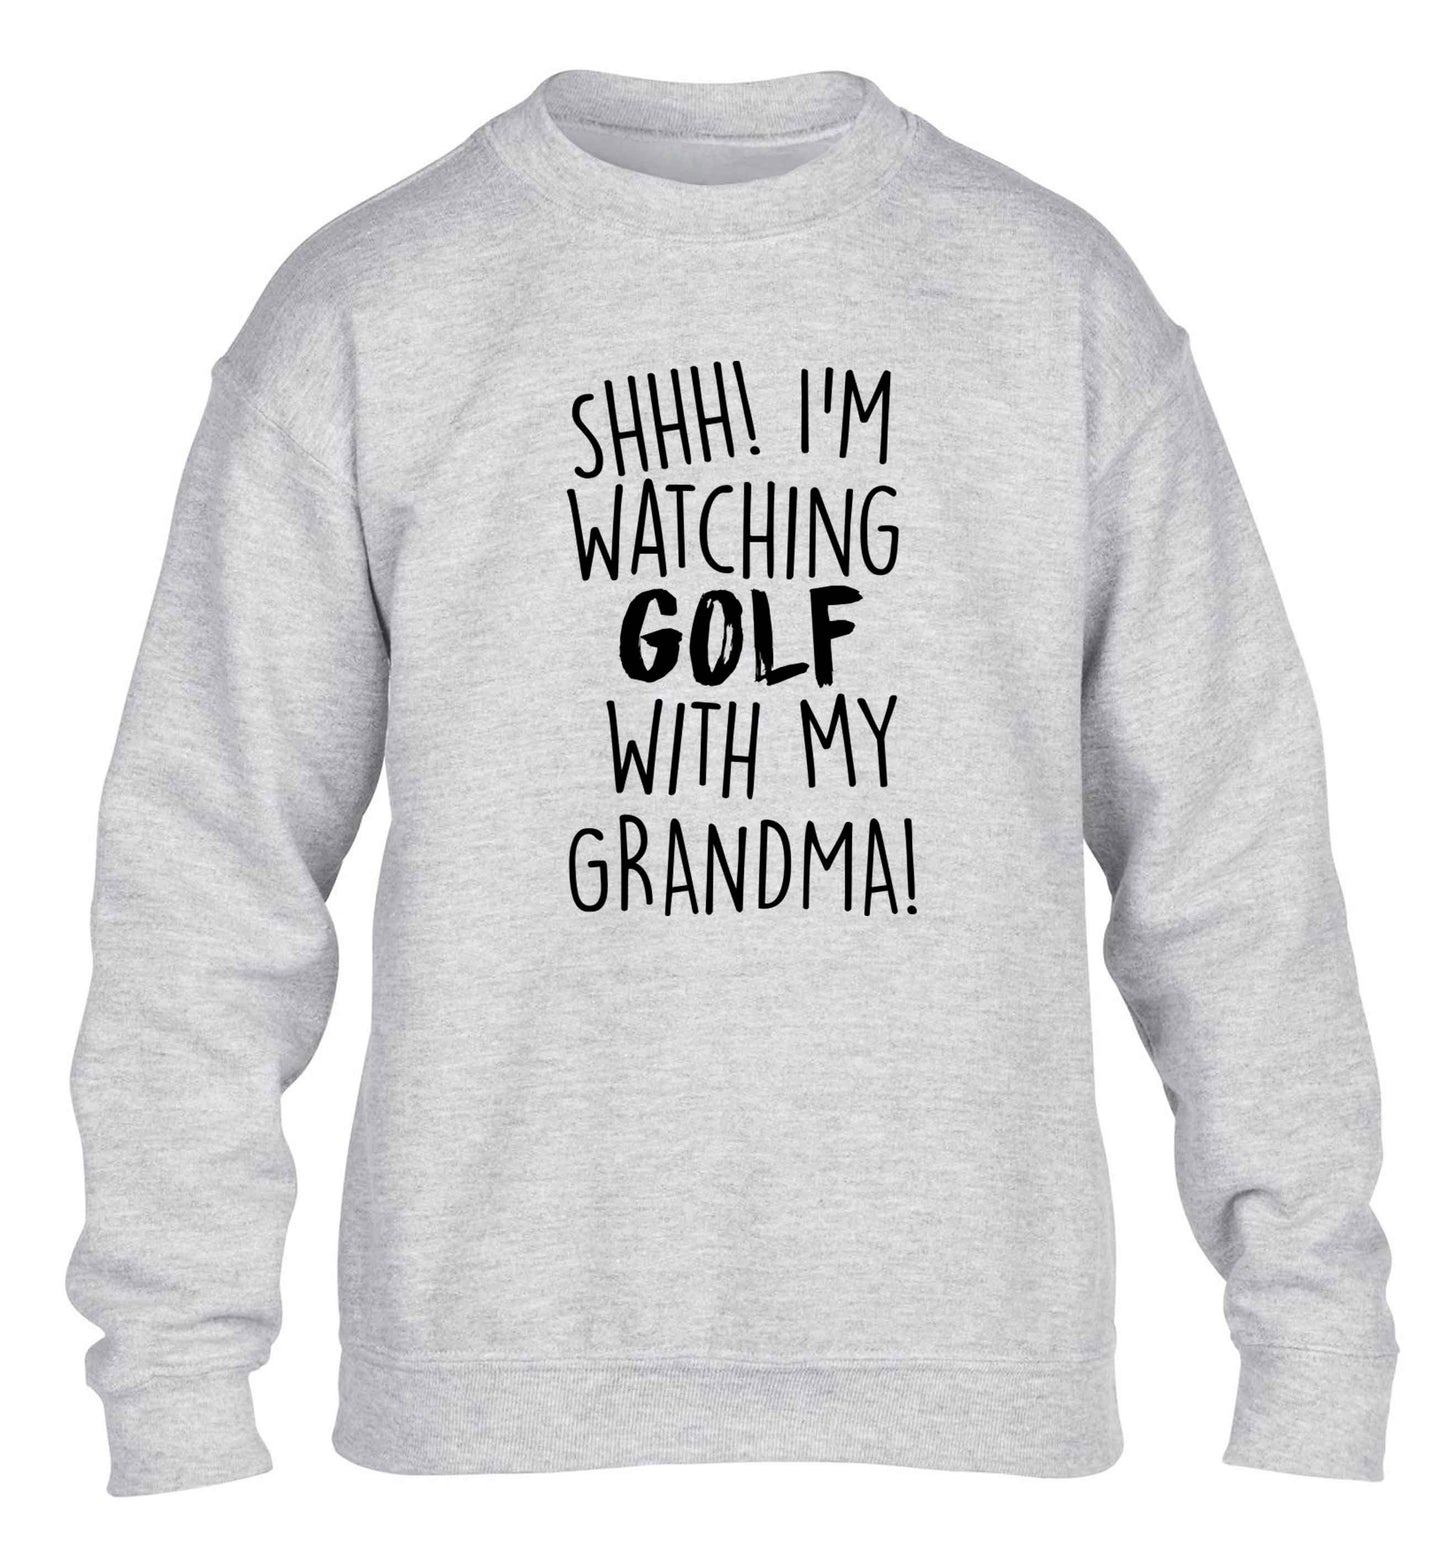 Shh I'm watching golf with my grandma children's grey sweater 12-13 Years